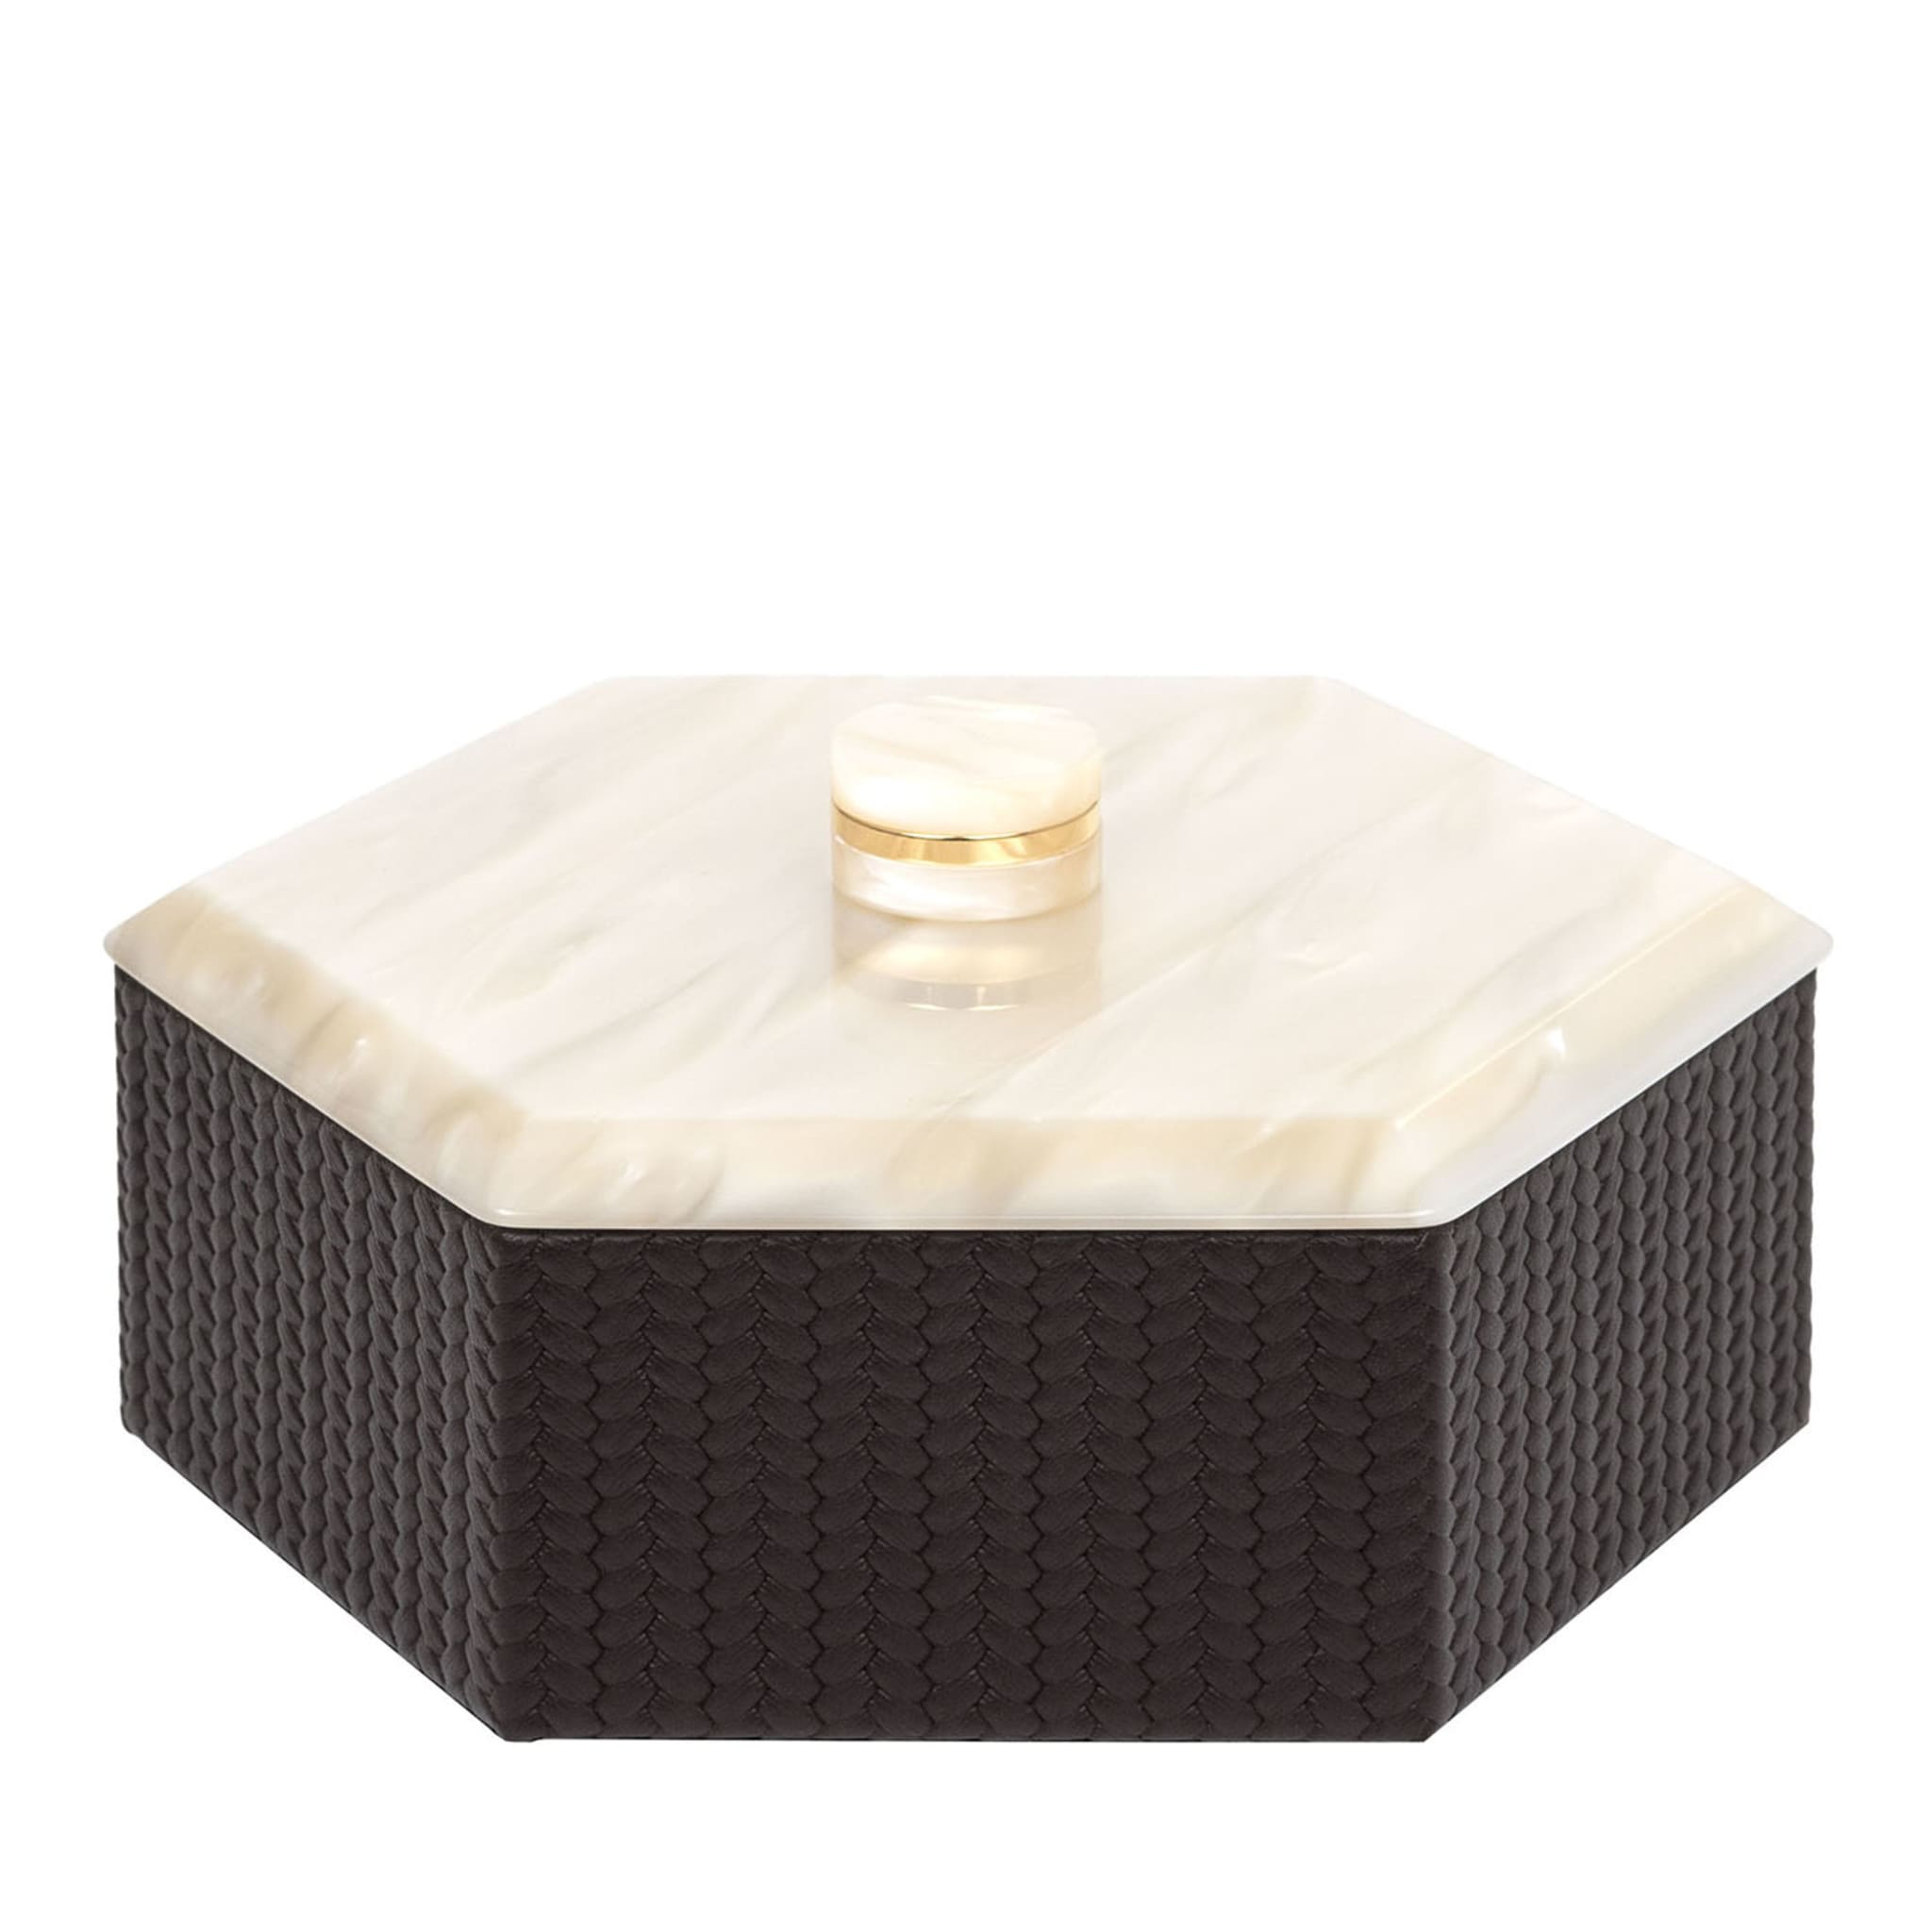 Kelly Low Petite boîte brune hexagonale avec couvercle - Vue principale